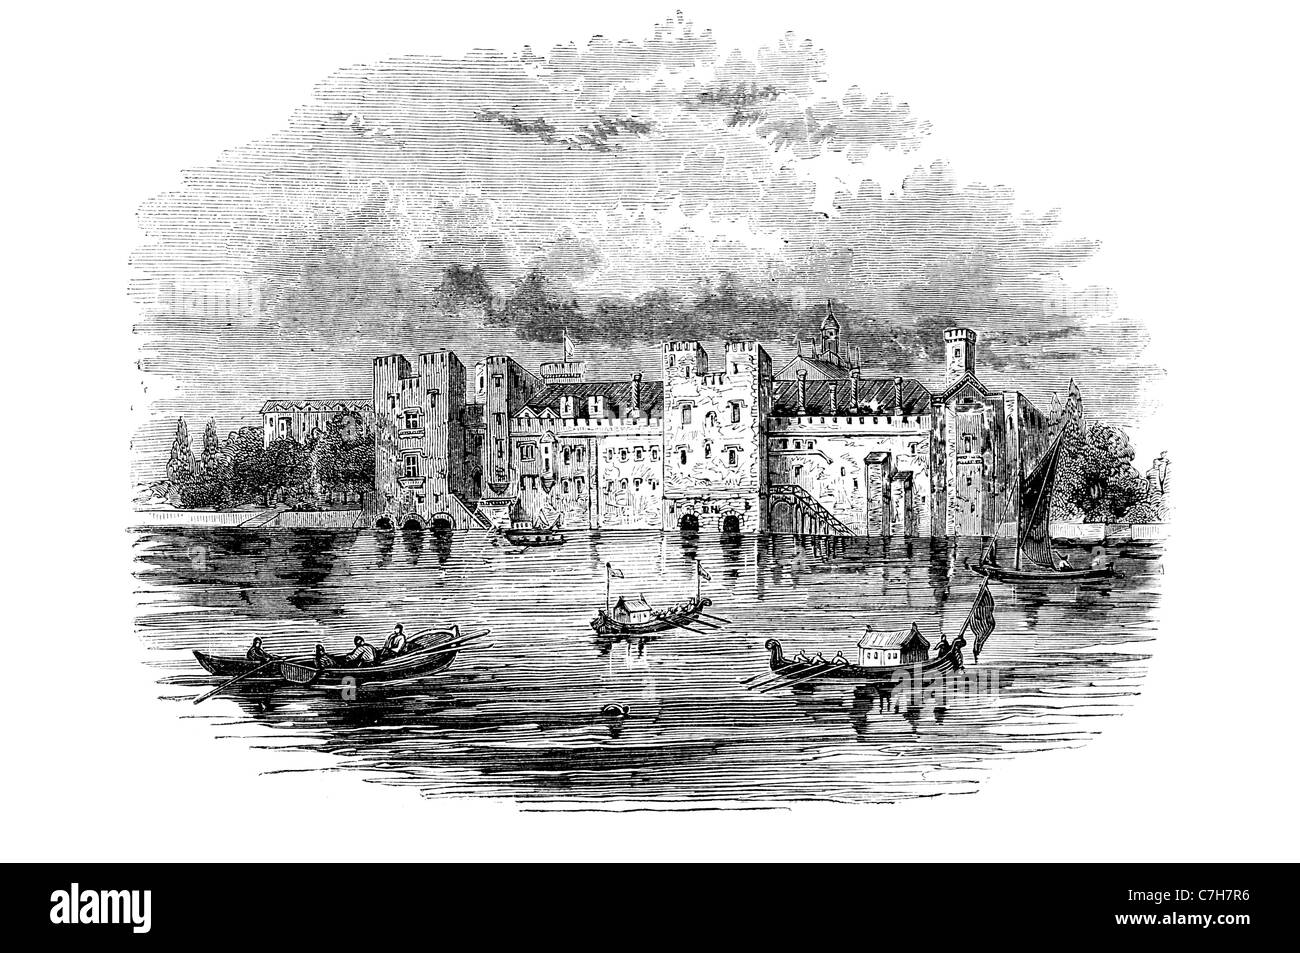 Savoy Palace plus grandiose résidence noble Révolte des paysans Londres médiéval Strand Moyen Âge l'architecture des palais de la noblesse Banque D'Images